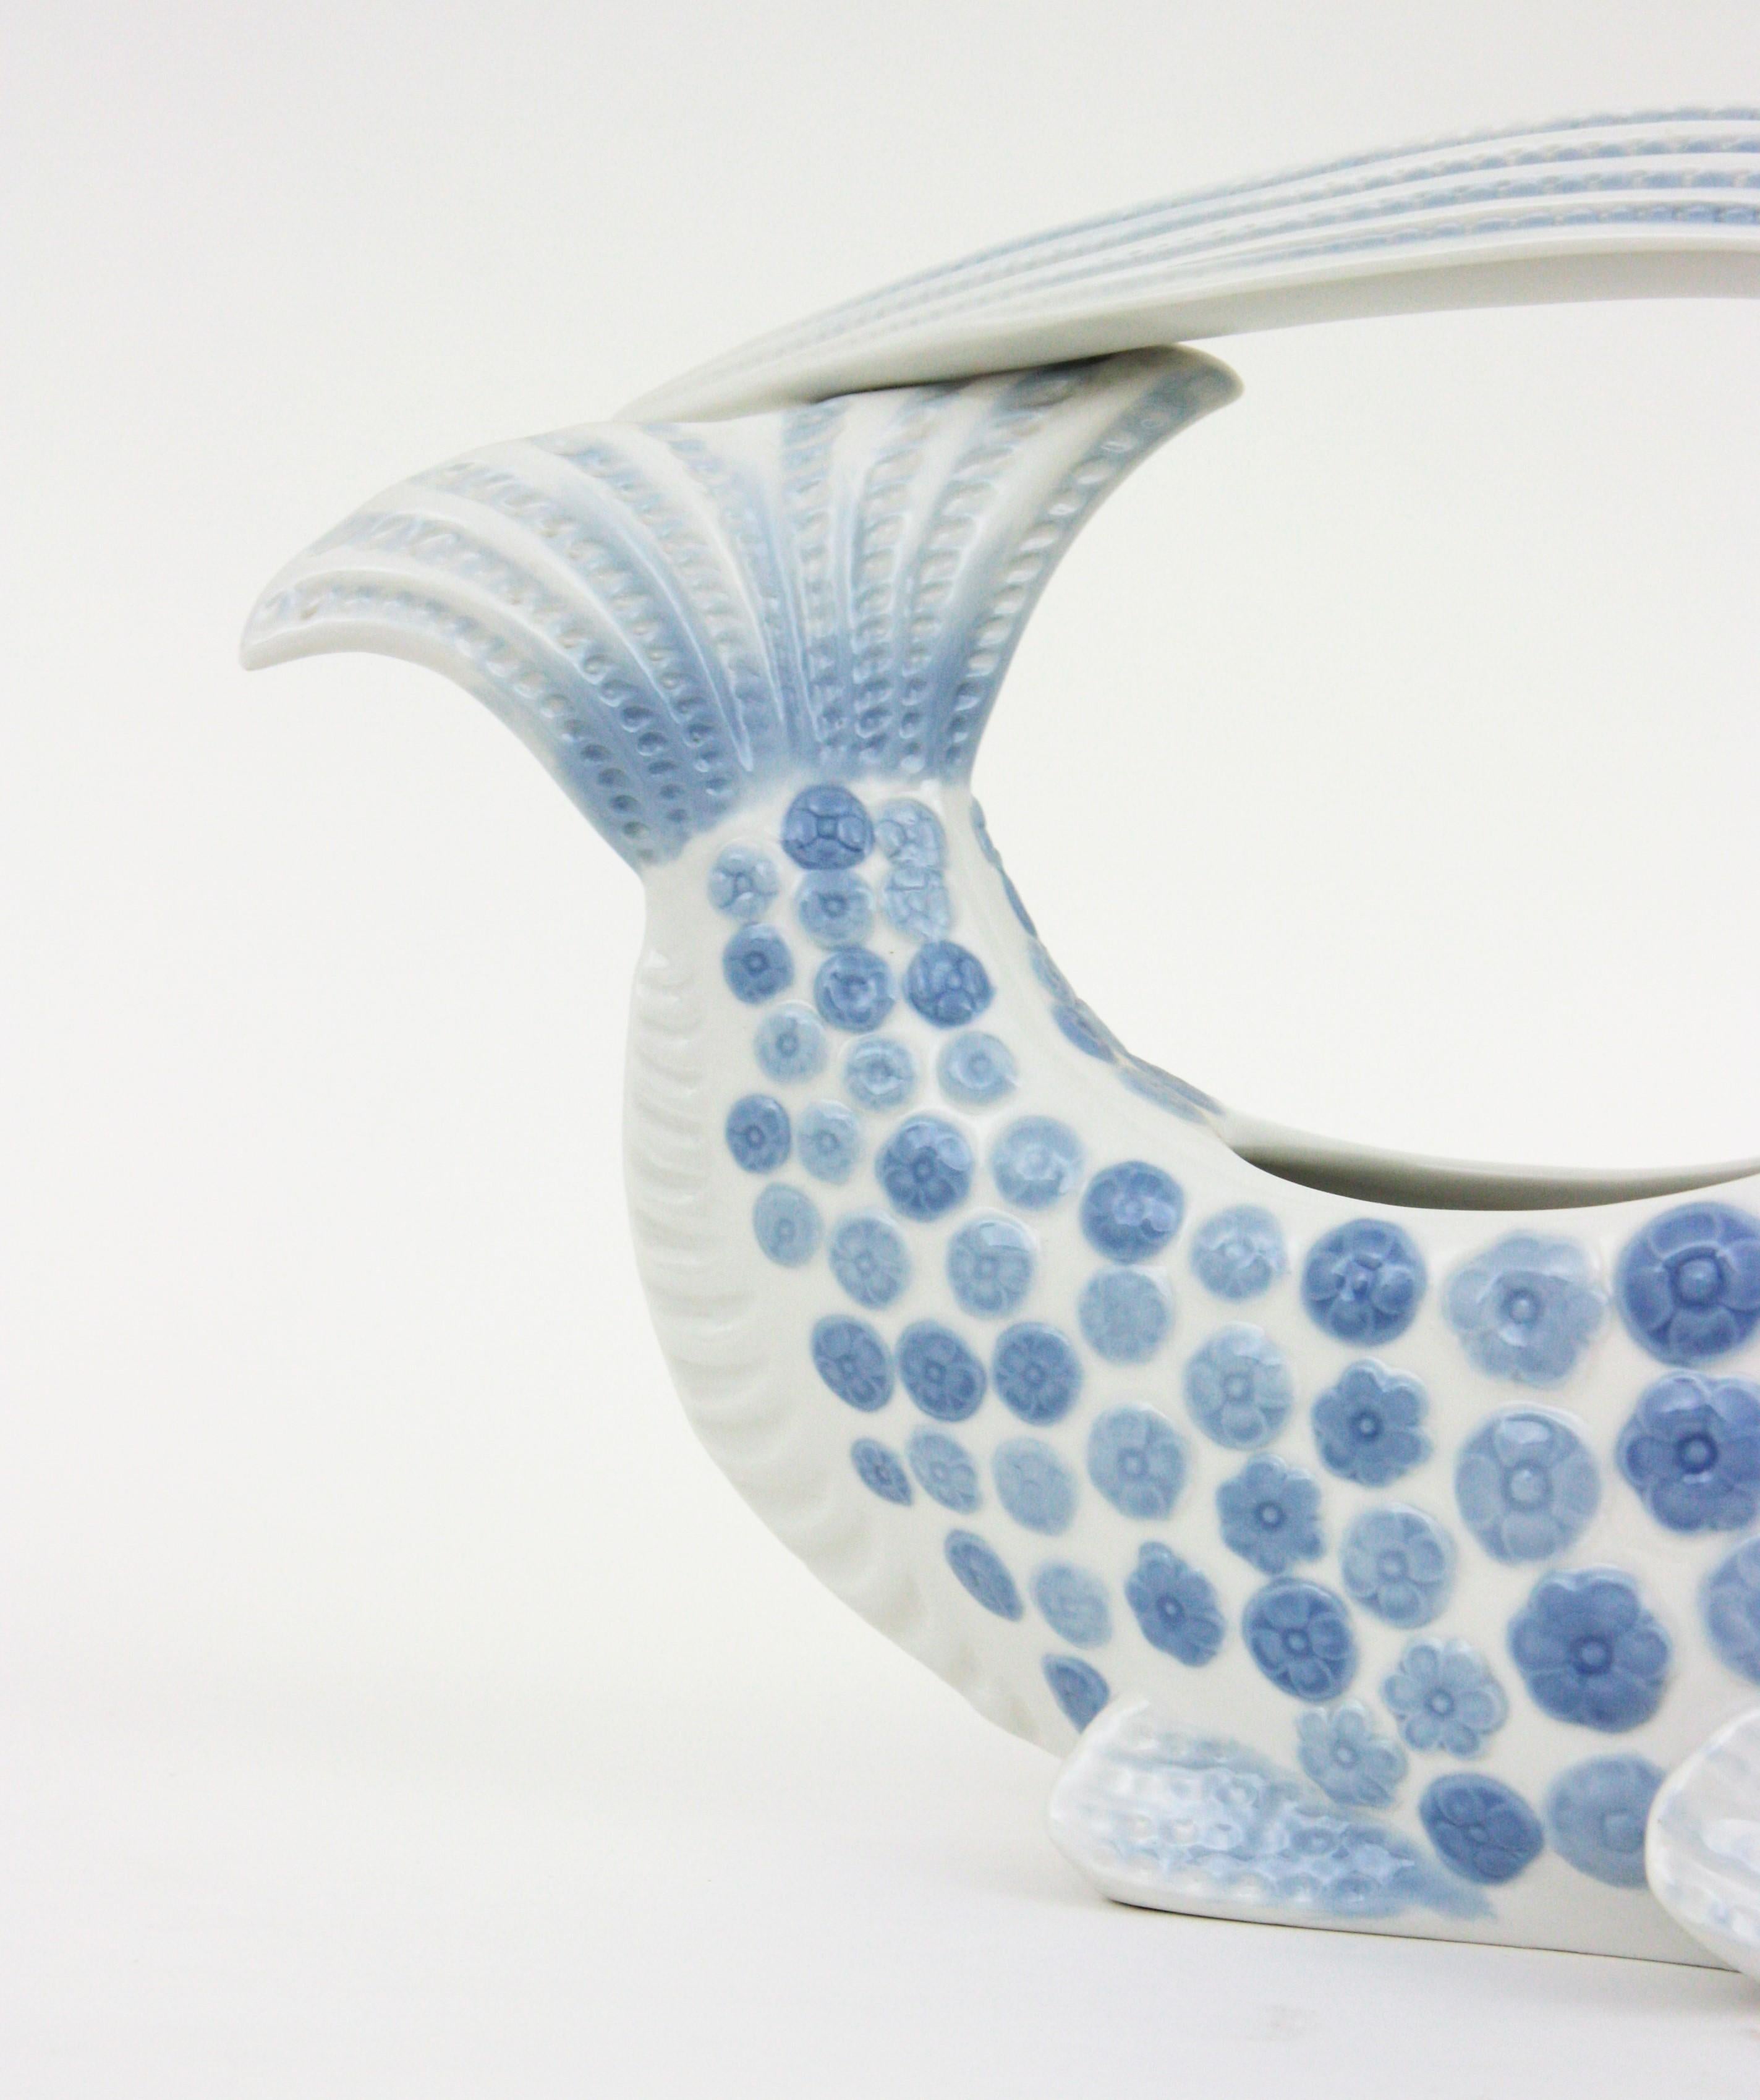 Lladró Porcelain Blue White Fish Centerpiece Vase Planter, Spain, 1970s For Sale 1